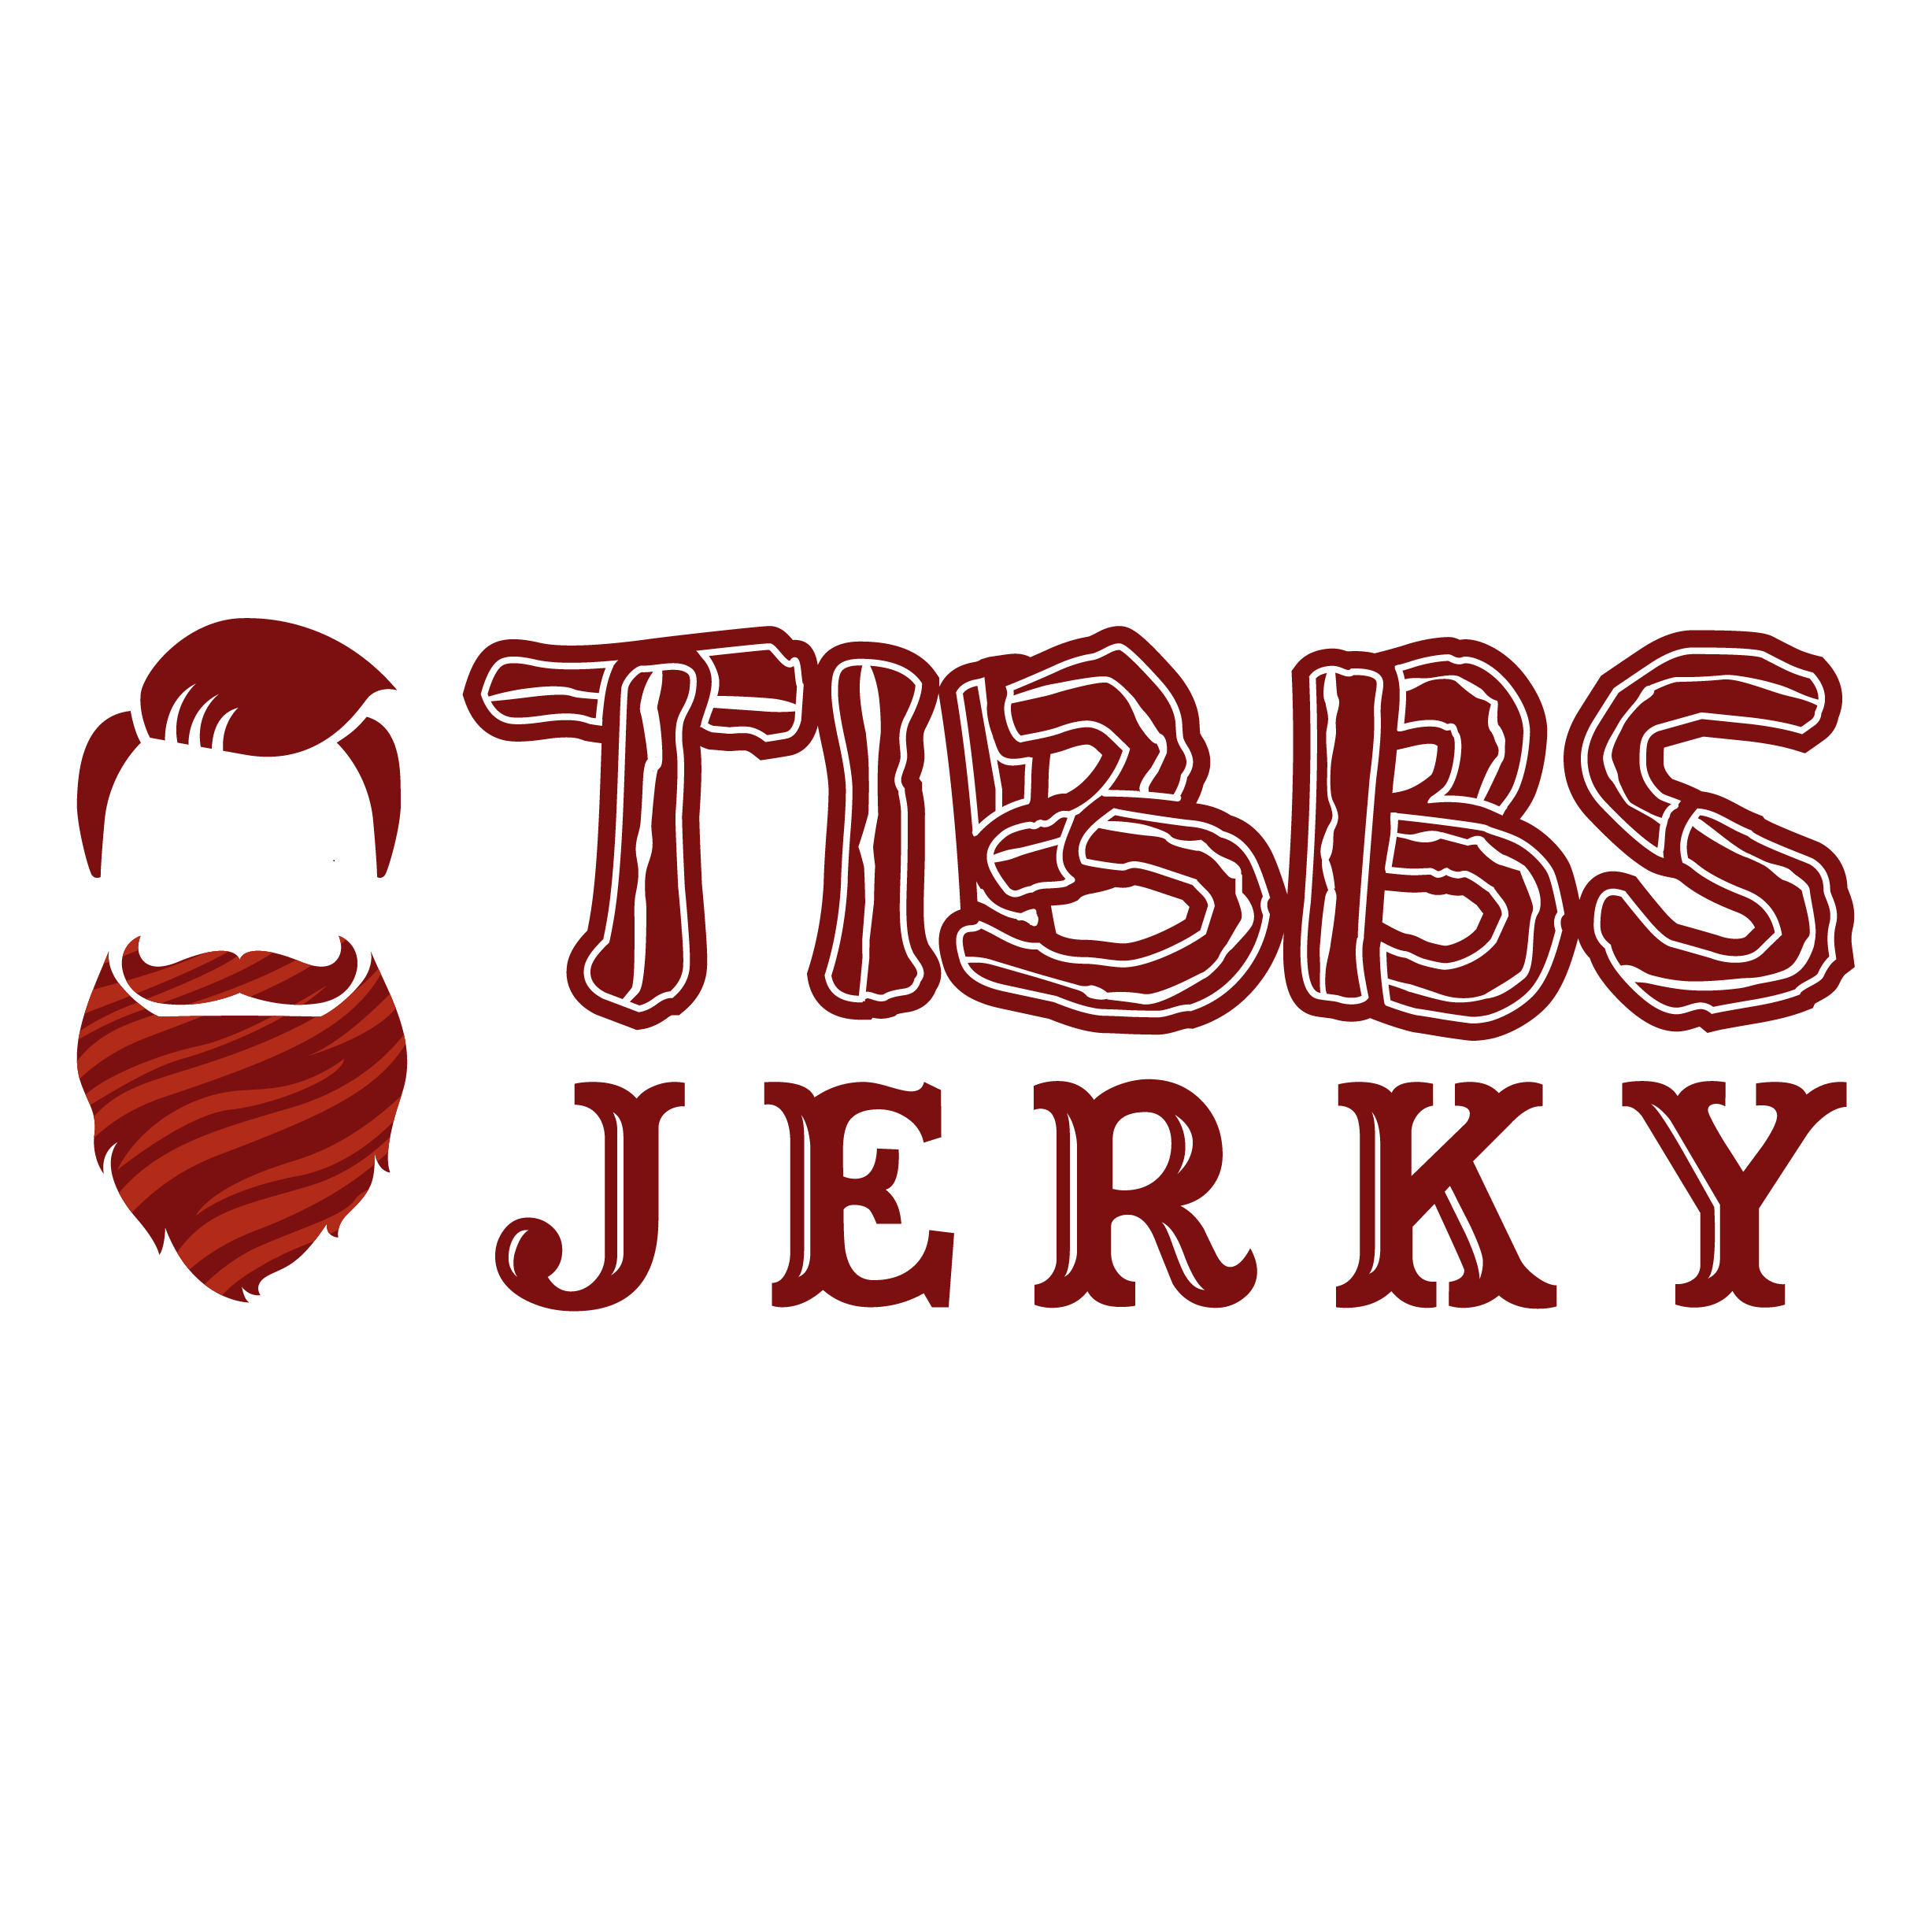 Tibbs Jerky Logo